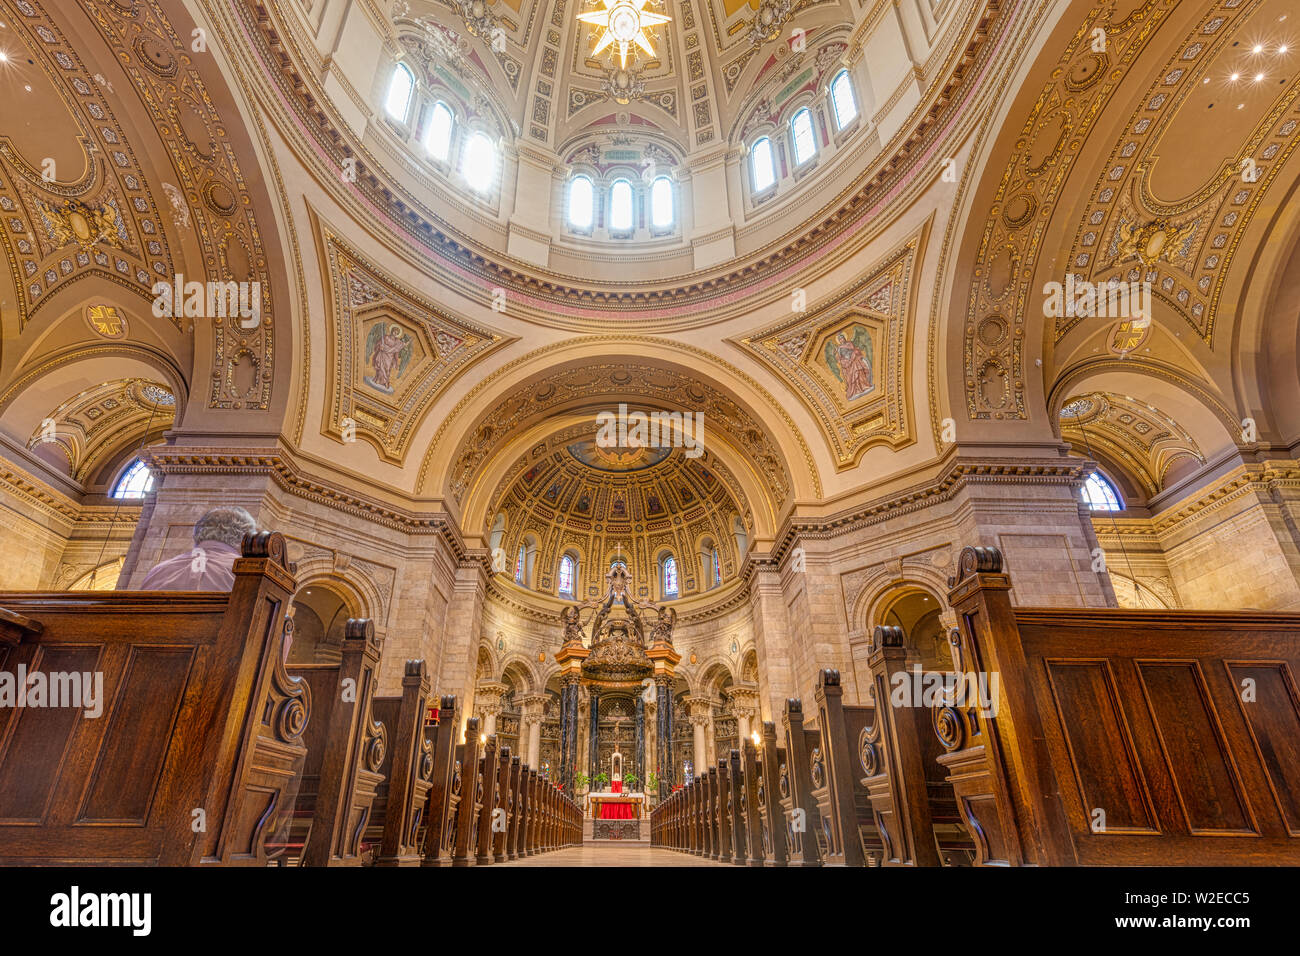 SAINT PAUL, Minnesota, Stati Uniti d'America - 29 Giugno 2019: vista interna della Cattedrale di Saint Paul, il terzo più grande cattedrale negli Stati Uniti Foto Stock